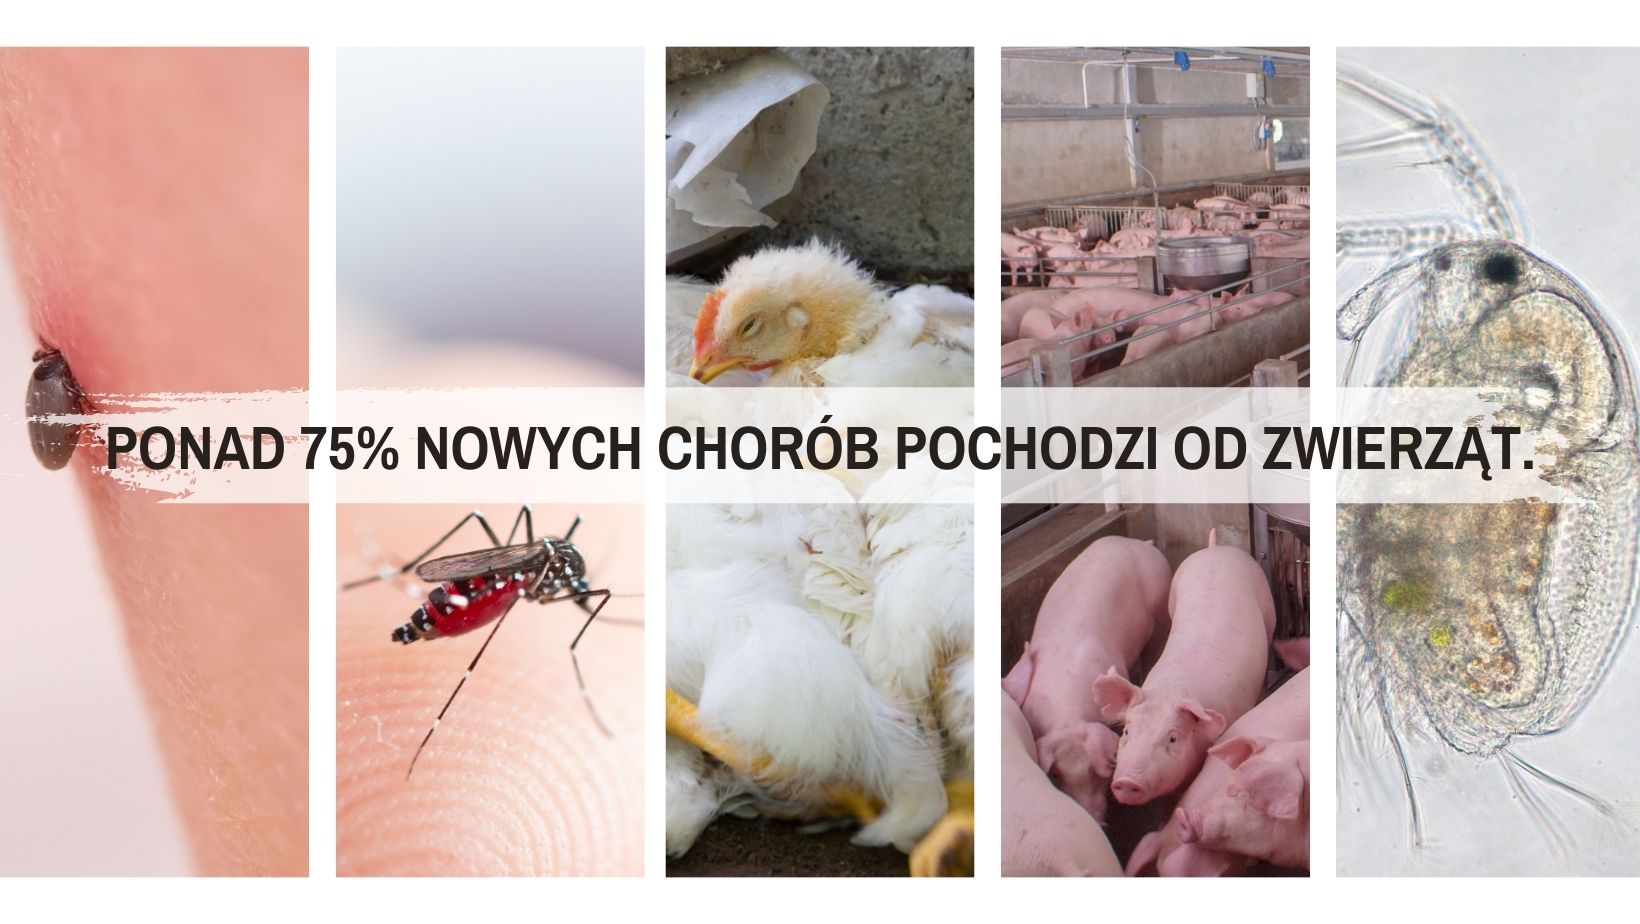 zdjęcie przedstawia wektory zwierzęce będące głównym źródłem nowych chorób zakażnych. od lewej kleszcz, komar, ptaki, świnie i pchła